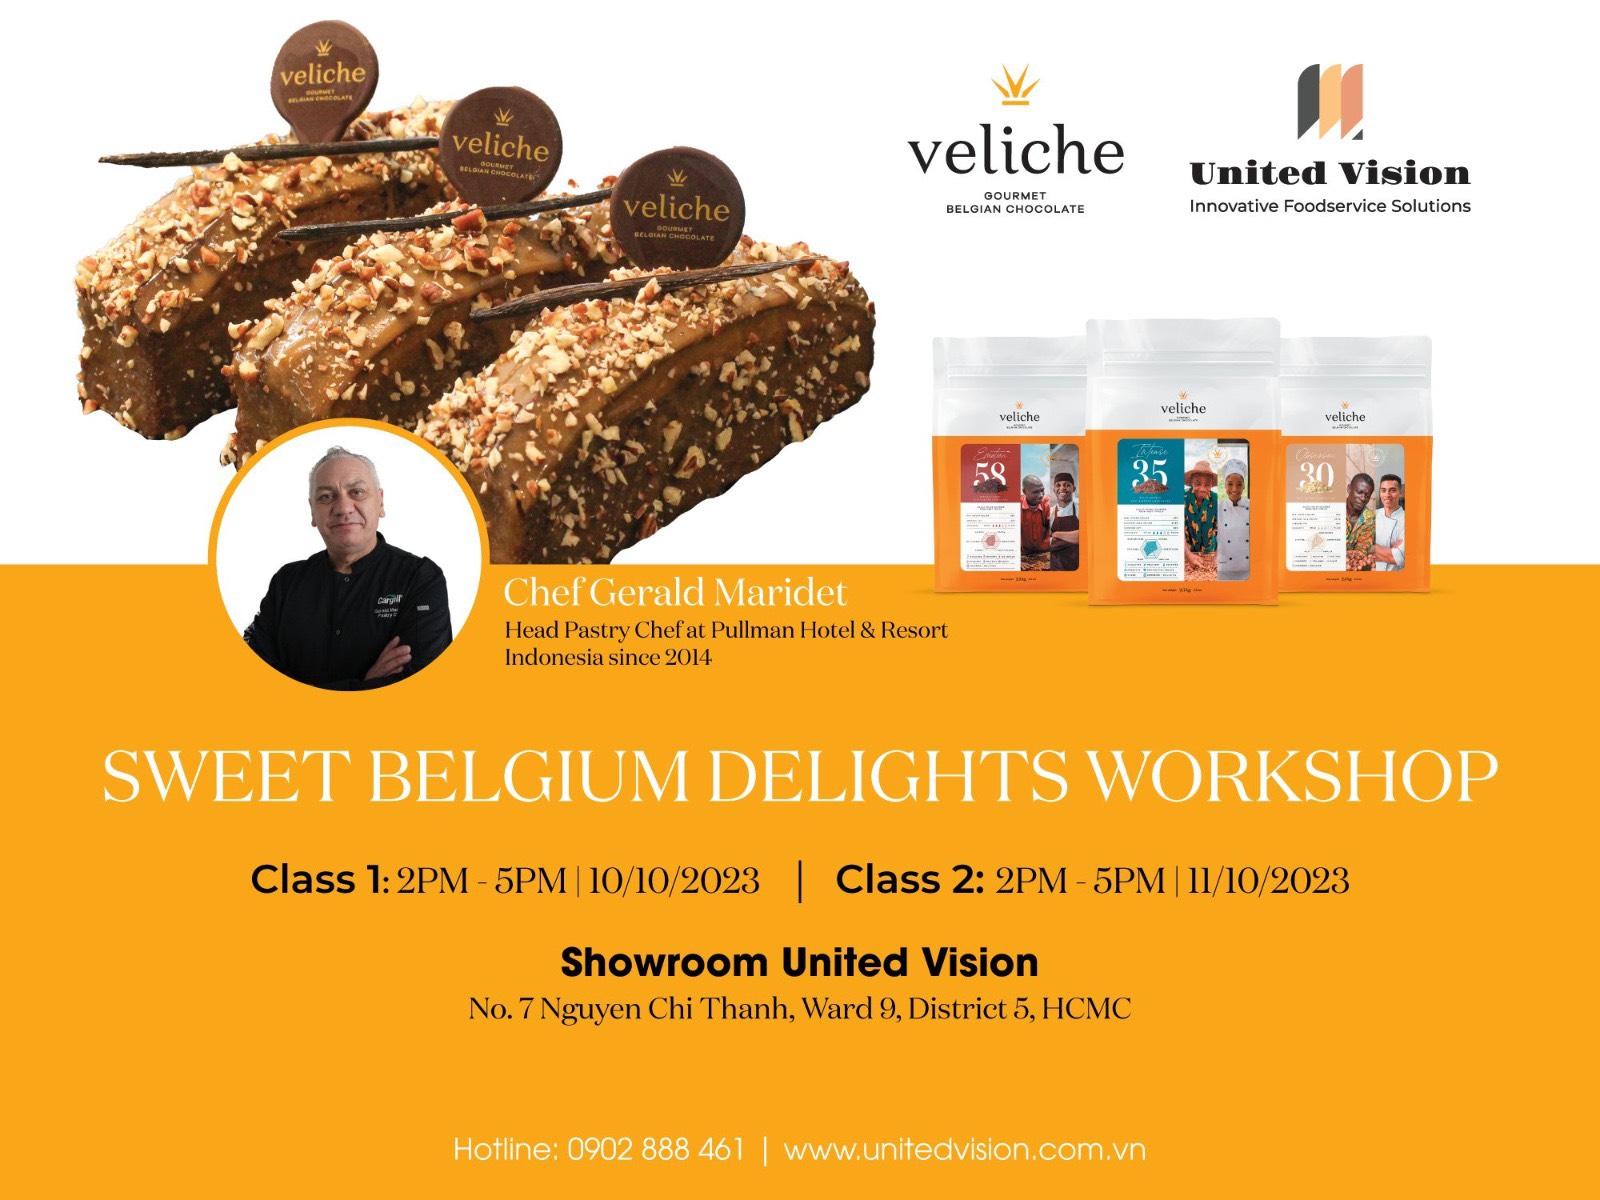 Workshop Sweet Belgium Delights - Gặp chef Gérald Maridet và cùng tìm hiểu thêm nhiều điều về thế giới chocolate